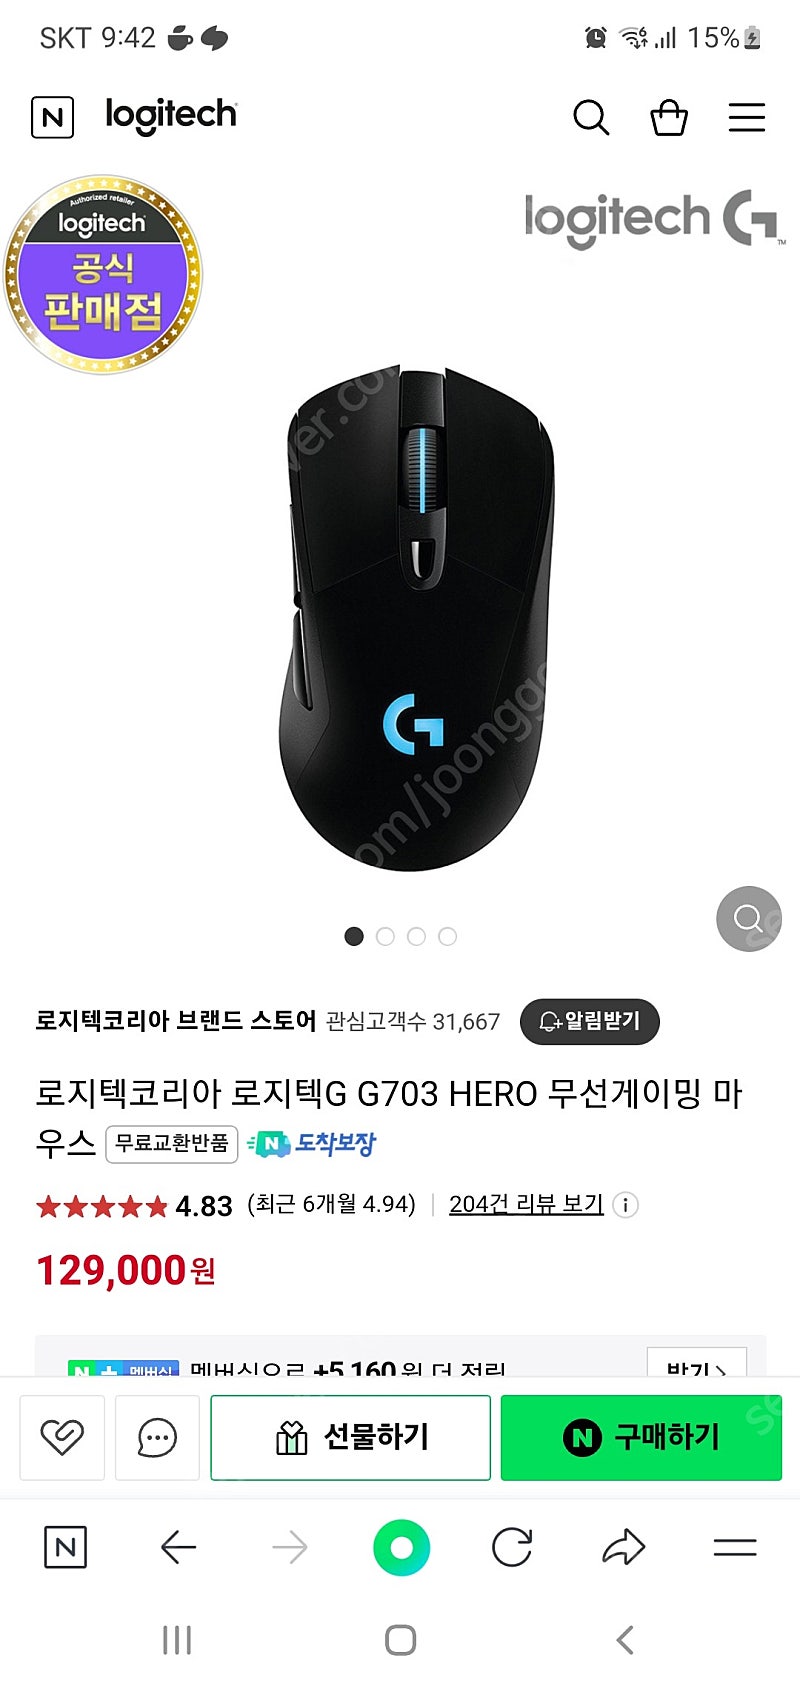 로지텍코리아 로지텍G G703 HERO 무선게이밍 마우스